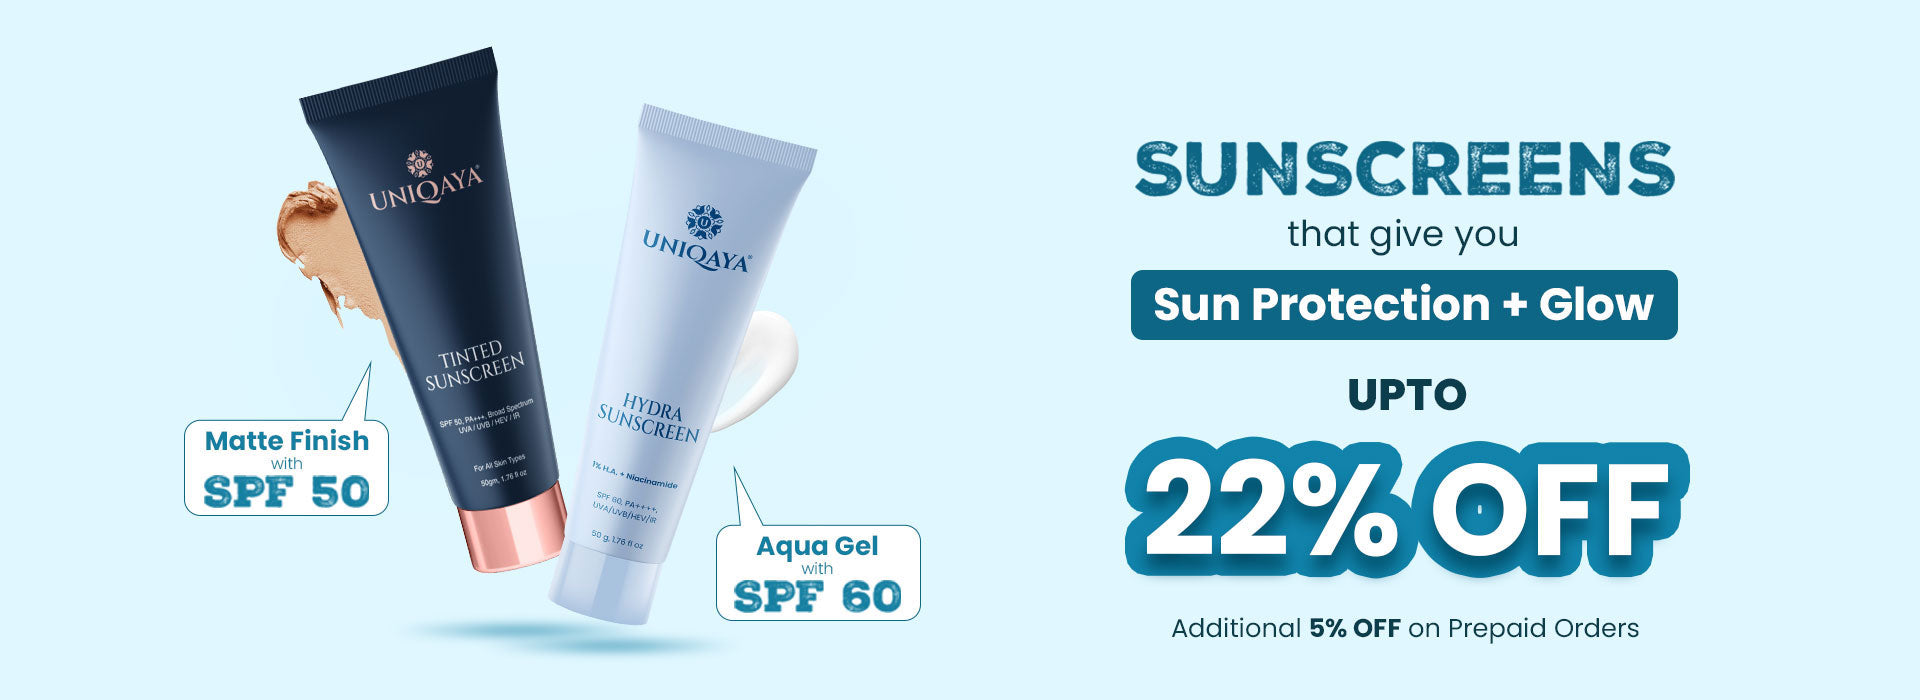 Uniqaya Summer Sunscreen - Tinted Sunscreen & Hydra Sunscreen